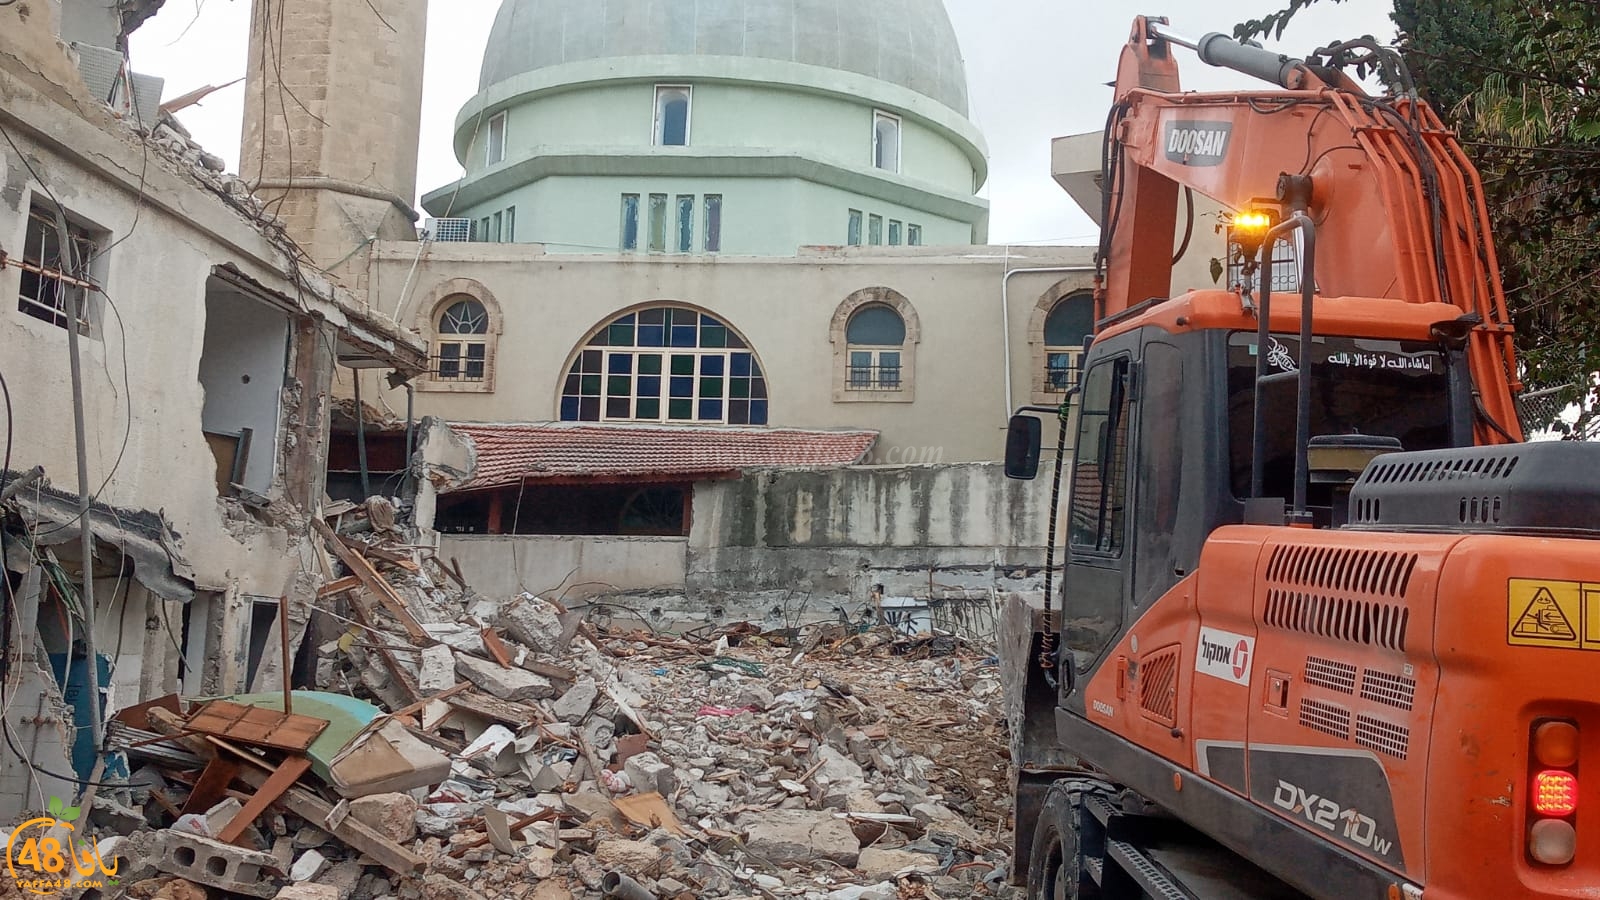 فيديو: هدم مبنى قديم بمحاذاة مسجد النزهة بيافا بهدف بناء فندق 